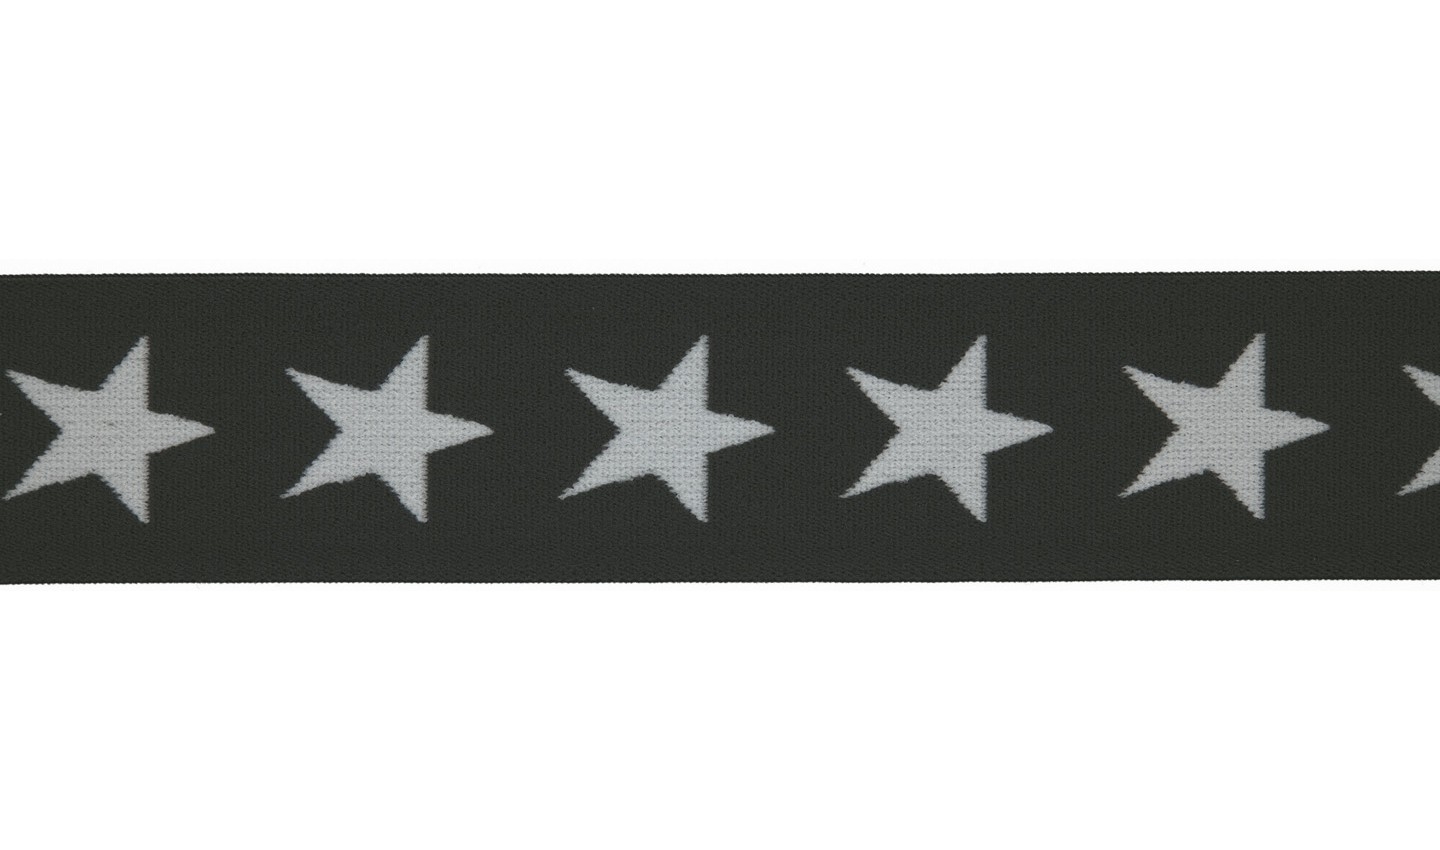 Gummiband 40mm anthrazit mit weißen Sternen (567)